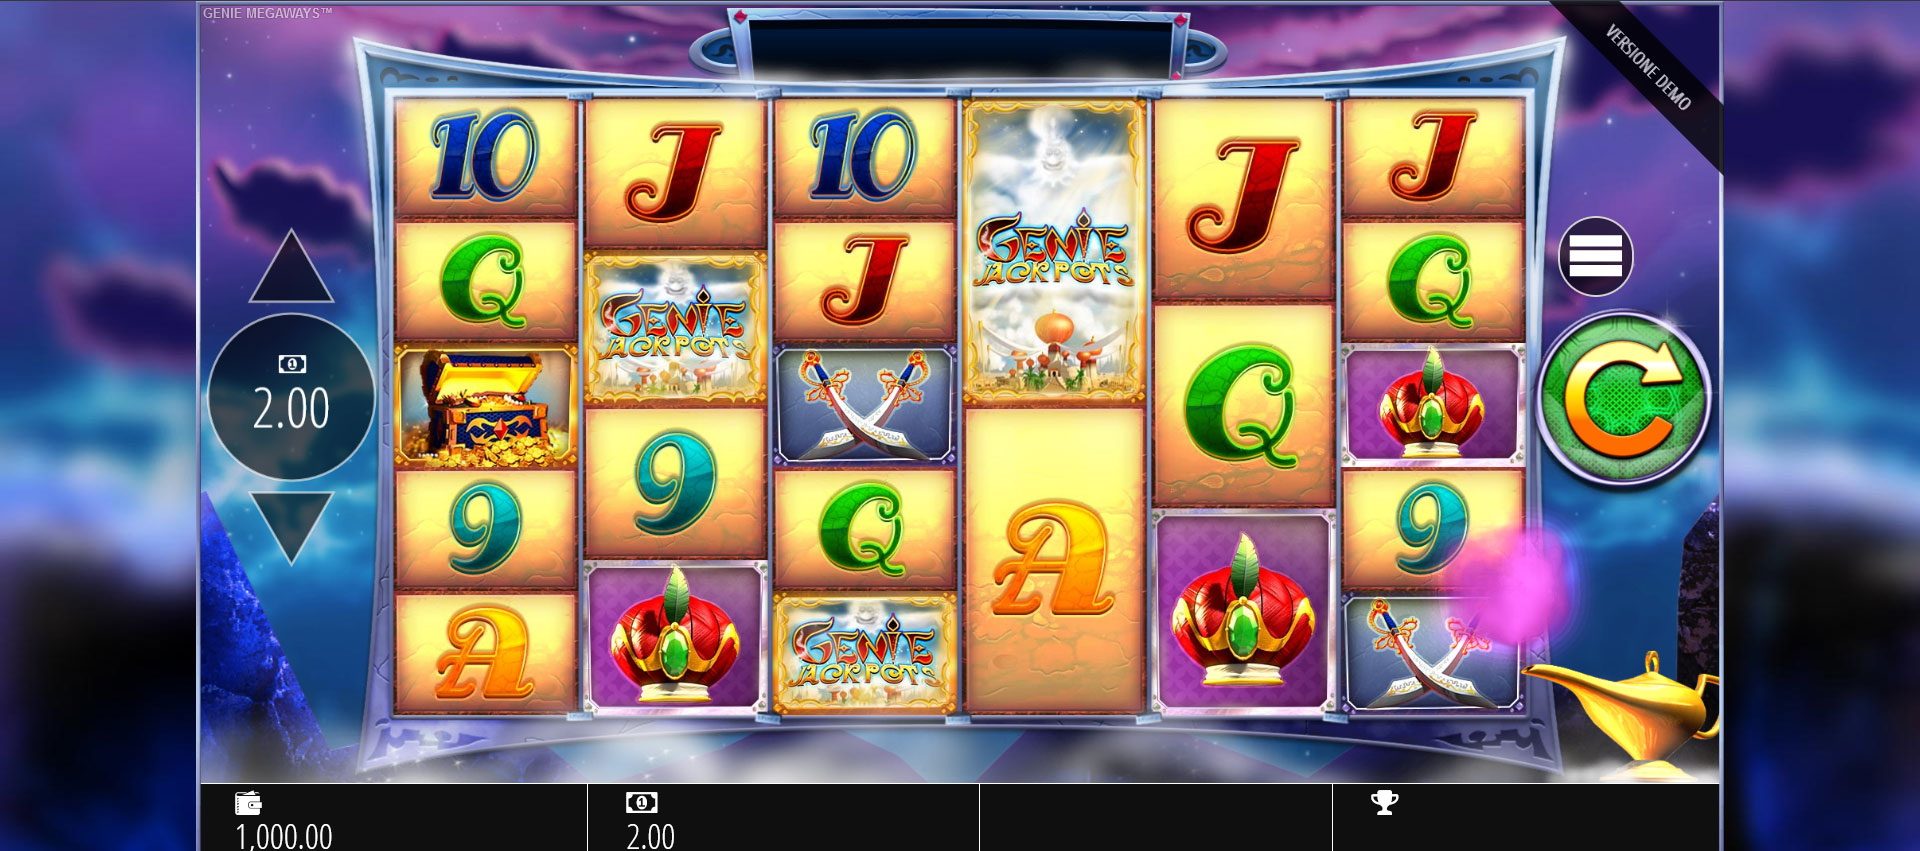 griglia di gioco della slot machine Genie Jackpots Megaways